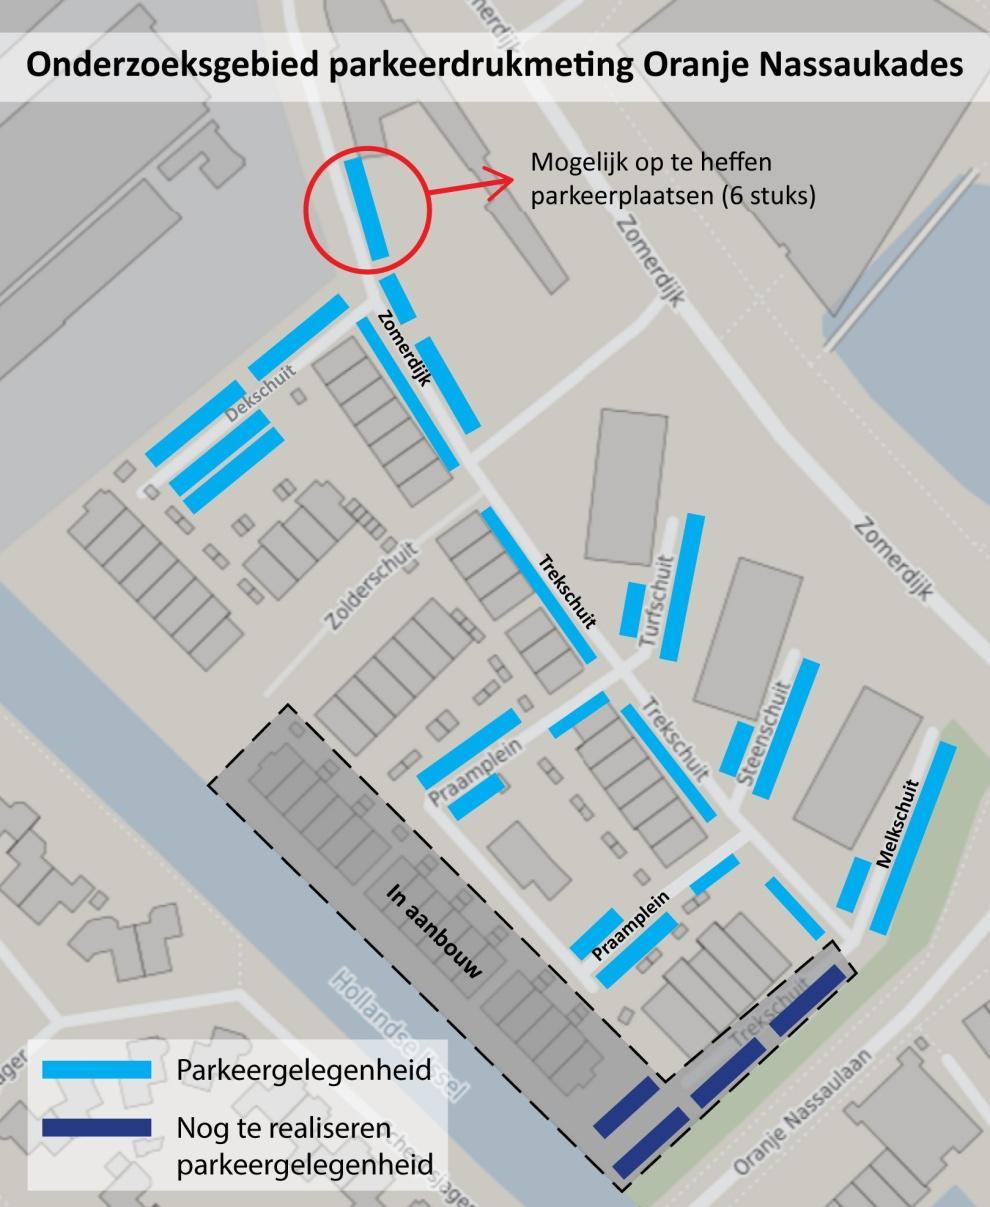 Kaart 3. Parkeergelegenheid in het onderzoeksgebied, te verdwijnen parkeerplaatsen aan de Zomerdijk en deel van het onderzoeksgebied dat in aanbouw is.